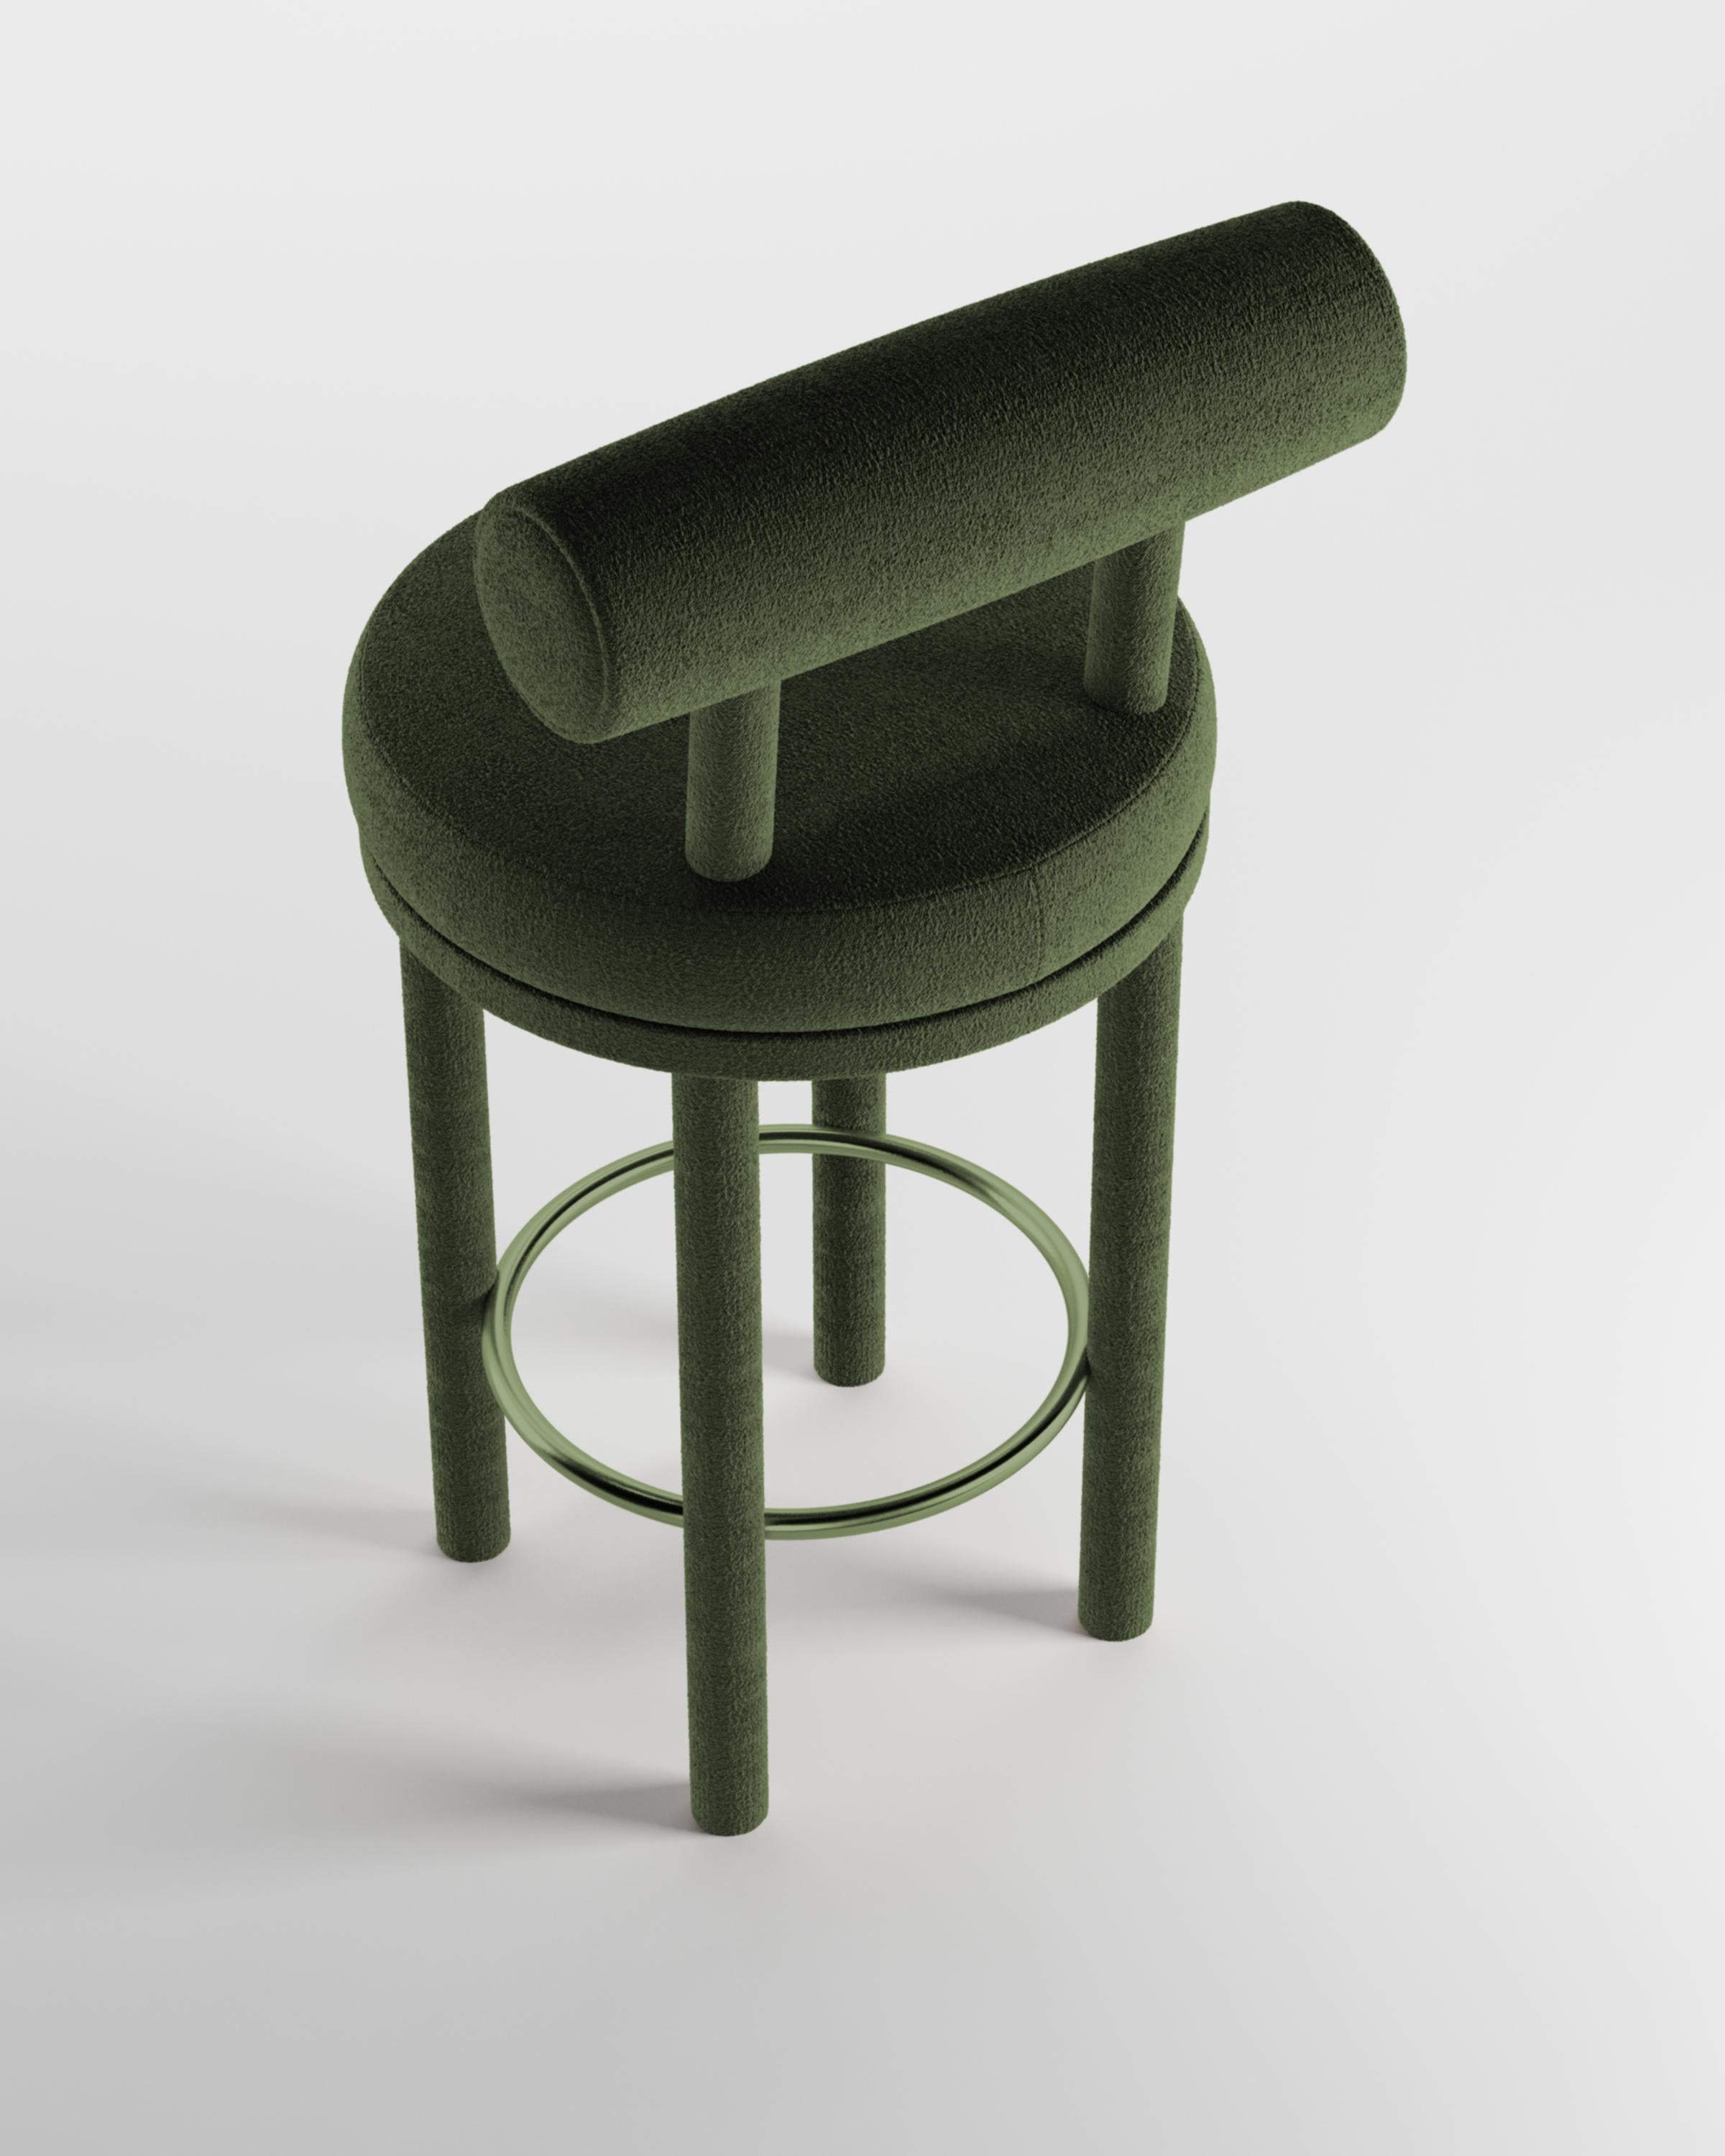 Moderner Barstuhl Moca mit Stoffbezug von Studio Rig für Collector Studio

Ein Stuhl, der sowohl moderne als auch klassische Designansätze miteinander verbindet.
Der strapazierfähige und solide Stuhl ist so konzipiert, dass er sich an den Körper